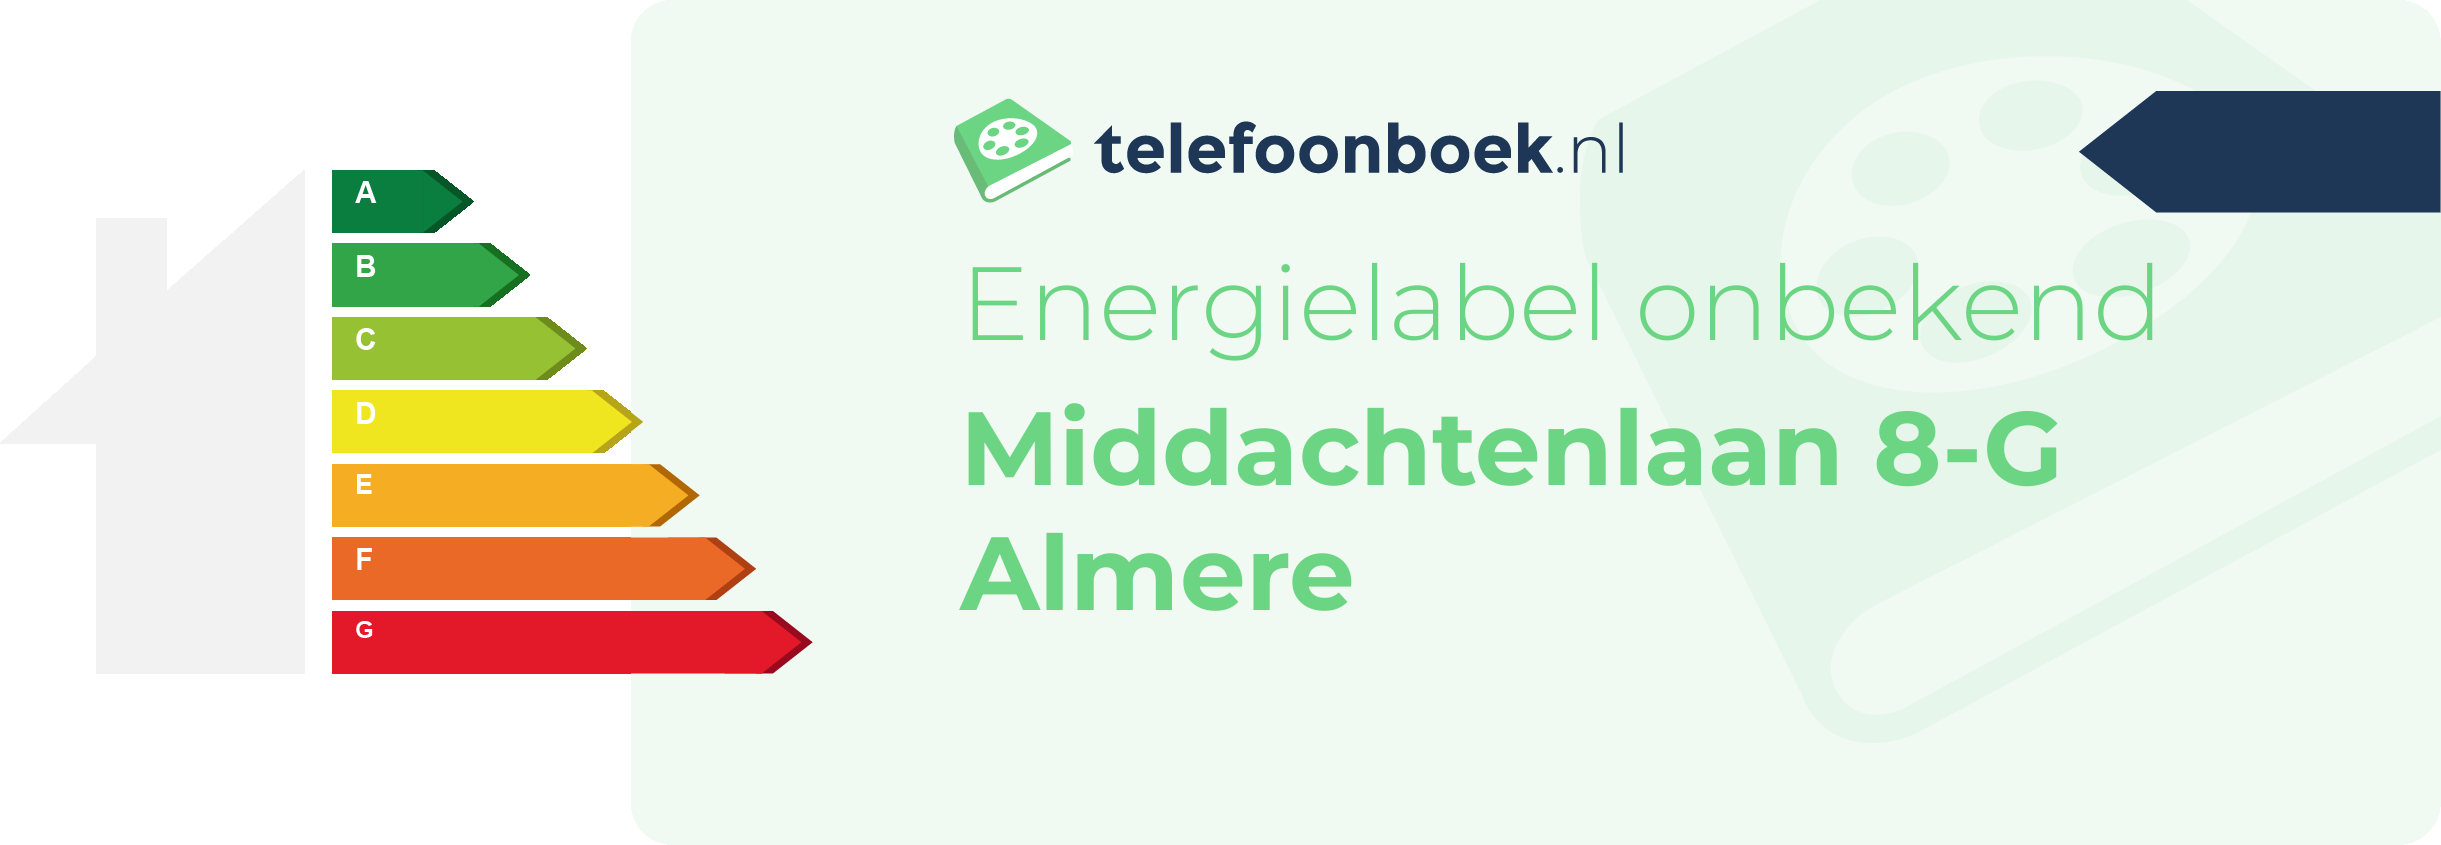 Energielabel Middachtenlaan 8-G Almere